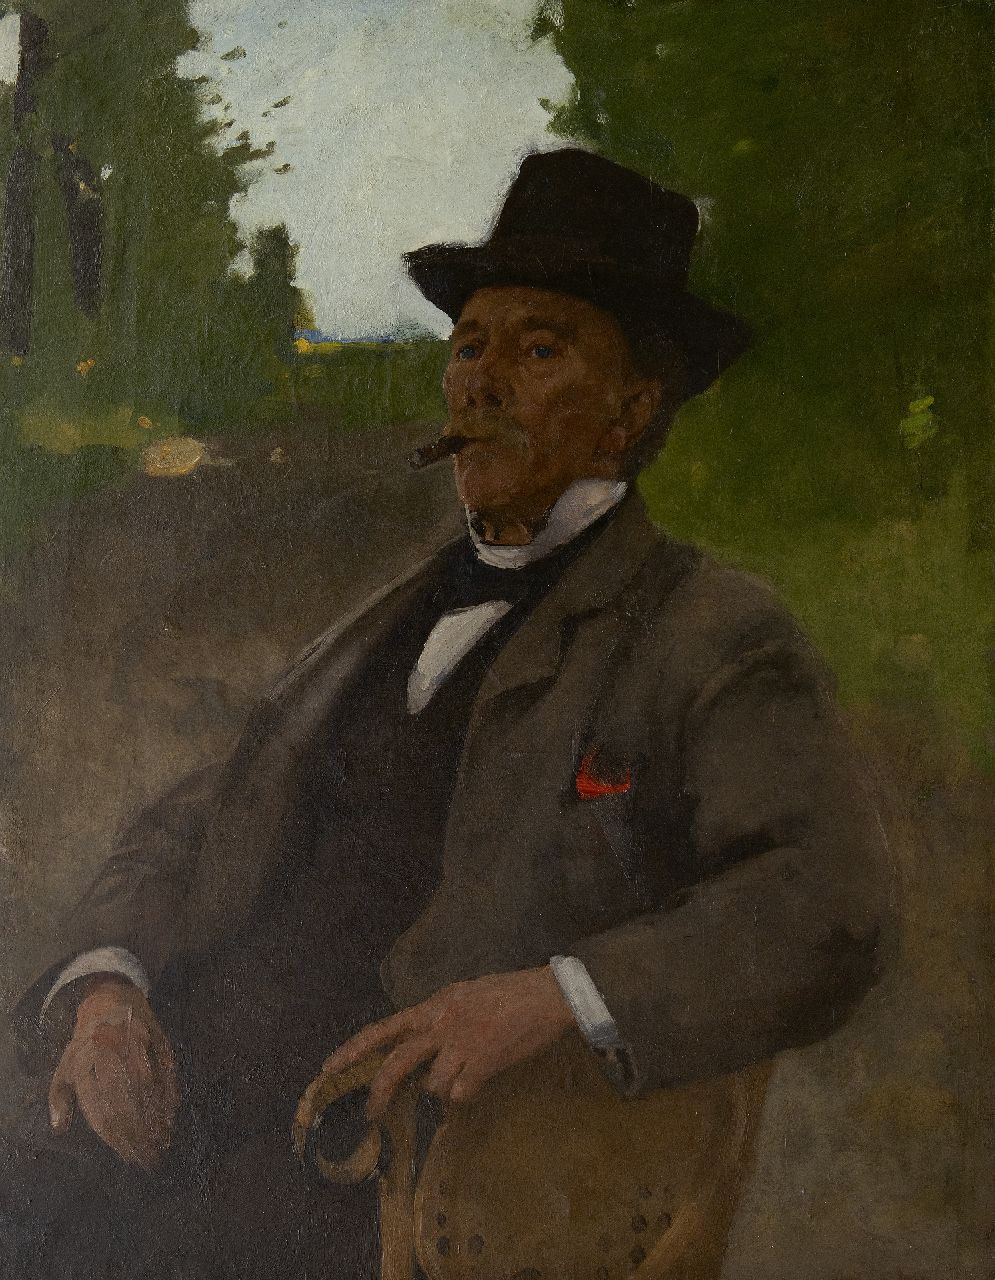 Witsen W.A.  | 'Willem' Arnold Witsen | Schilderijen te koop aangeboden | Portret van Jonas Witsen, de vader van de schilder, olieverf op doek 100,2 x 78,6 cm, te dateren ca. 1890